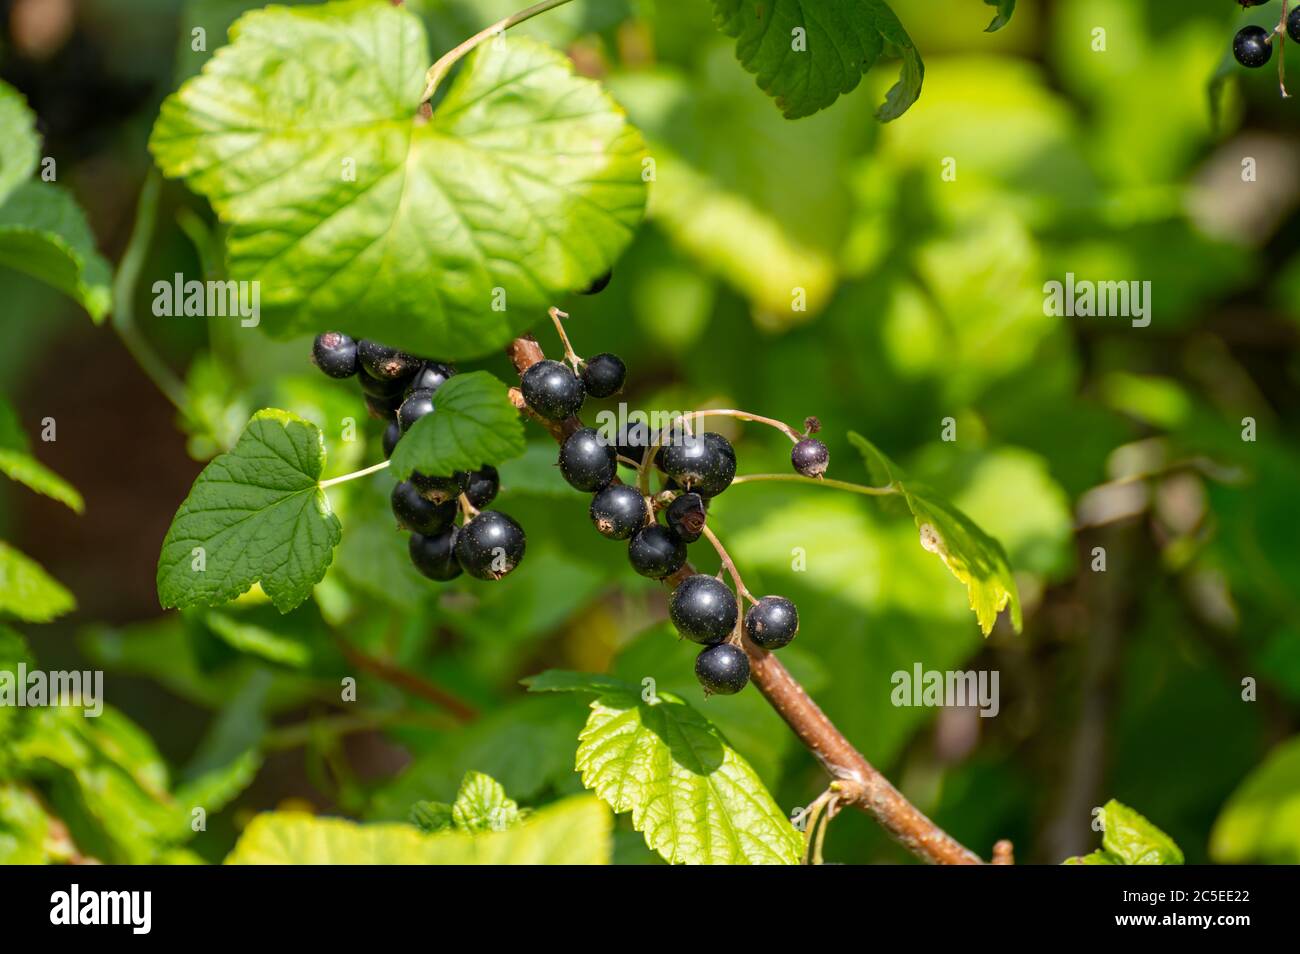 Botanische Sammlung von essbaren Pflanzen und Kräutern, schwarze  Johannisbeere Ribes nigrum oder Cassis Holzstrauch mit reifen Beeren  Stockfotografie - Alamy